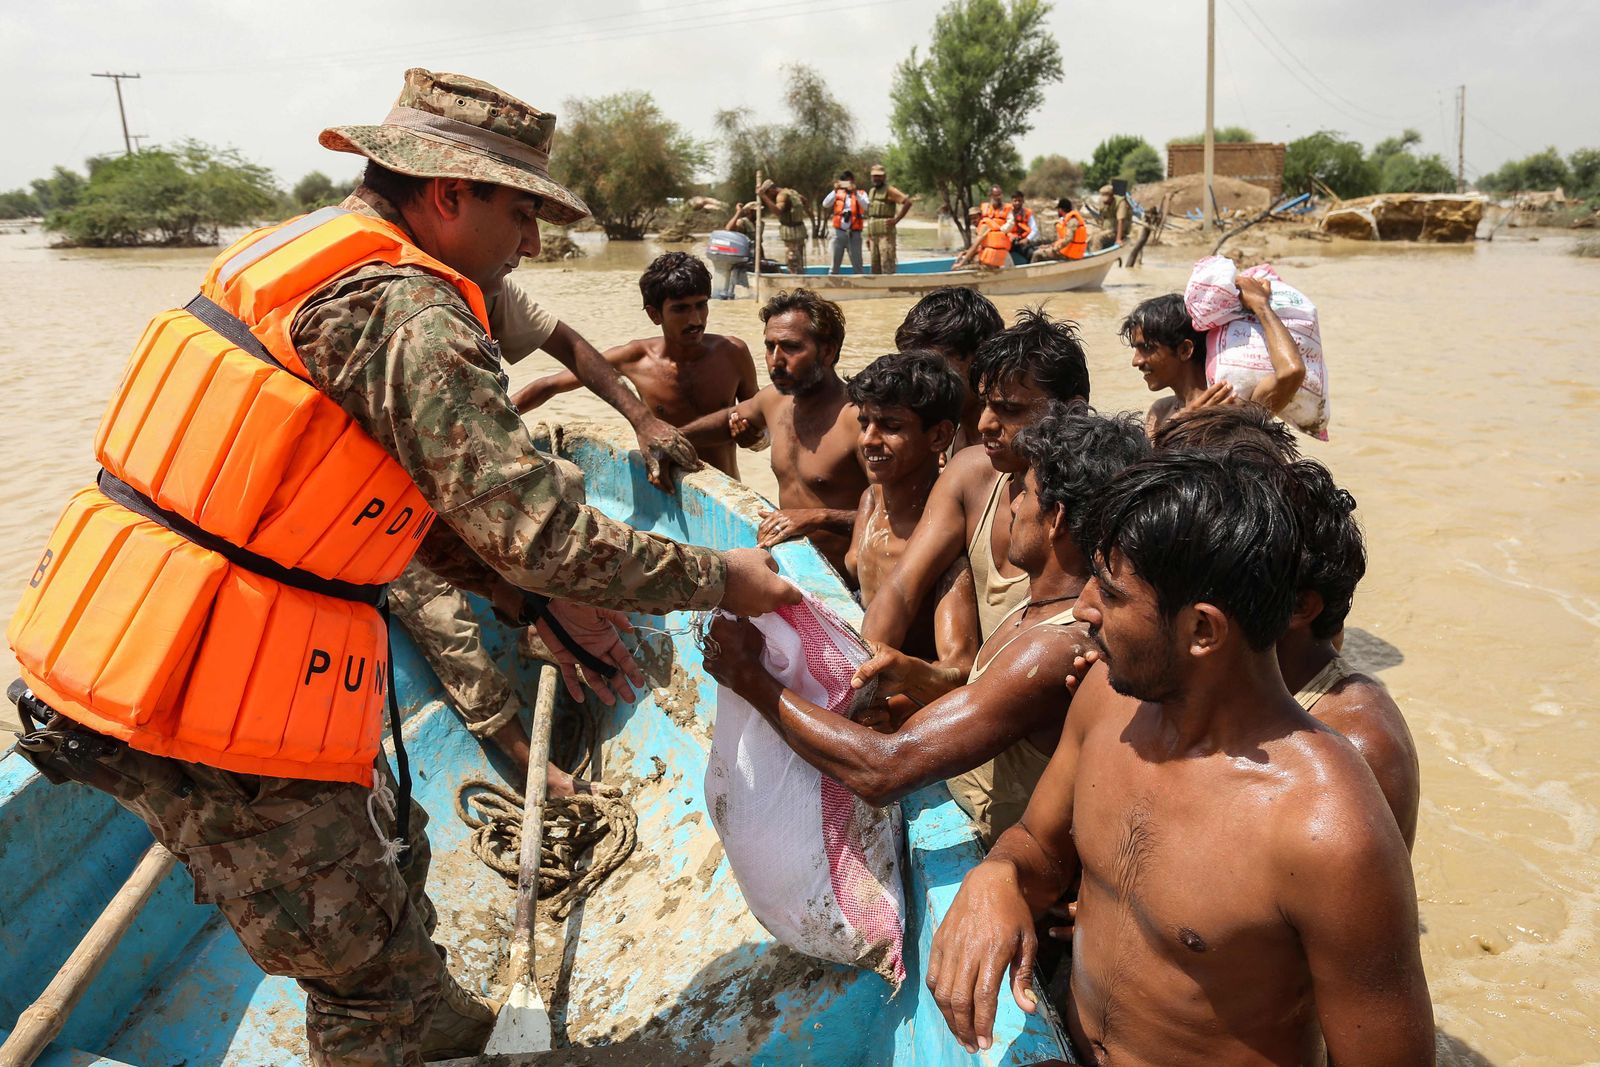 أفراد من الجيش الباكستاني يوزعون طرود غذائية على المتضررين من الفيضانات في منطقة راجانبور بإقليم البنجاب- 27 أغسطس 2022 - AFP